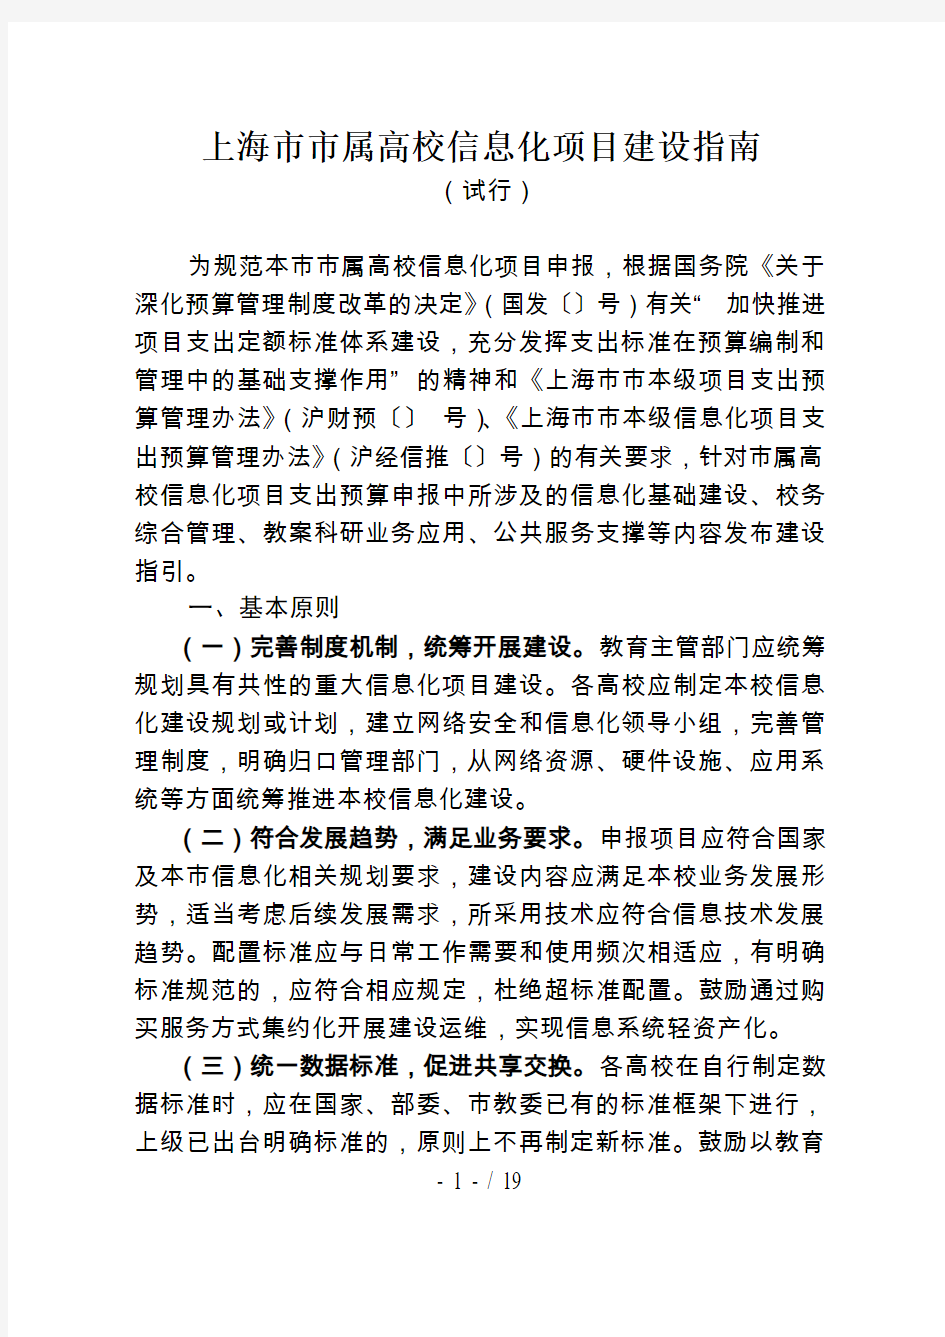 上海市市属高校信息化项目建设指南